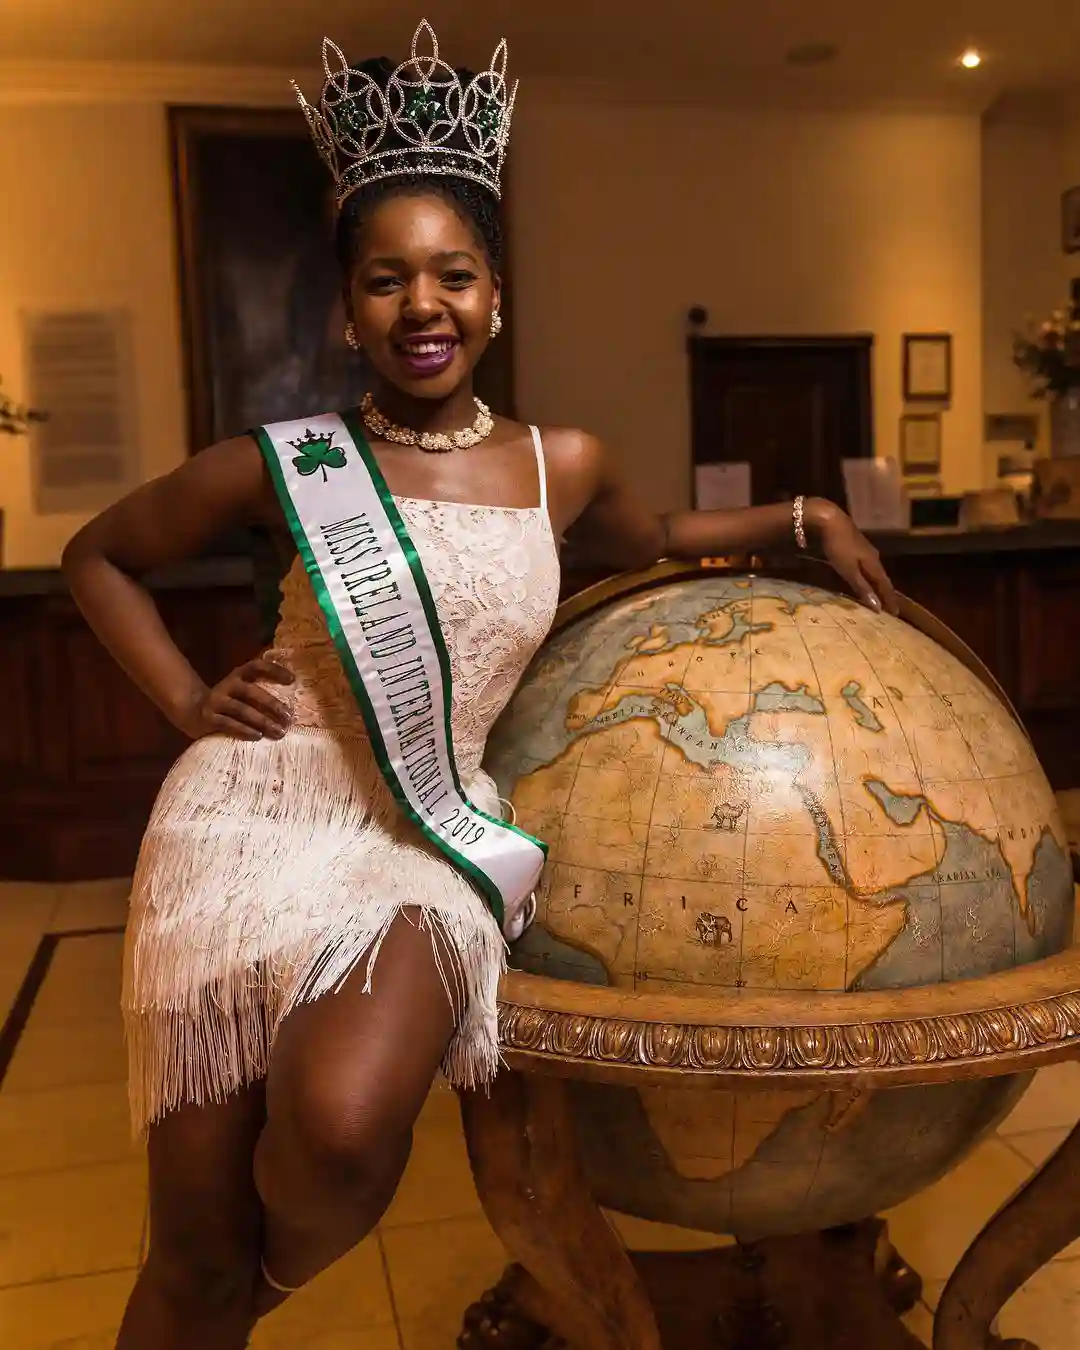 PICTURES: Zimbabwean Model Wins Miss Ireland International